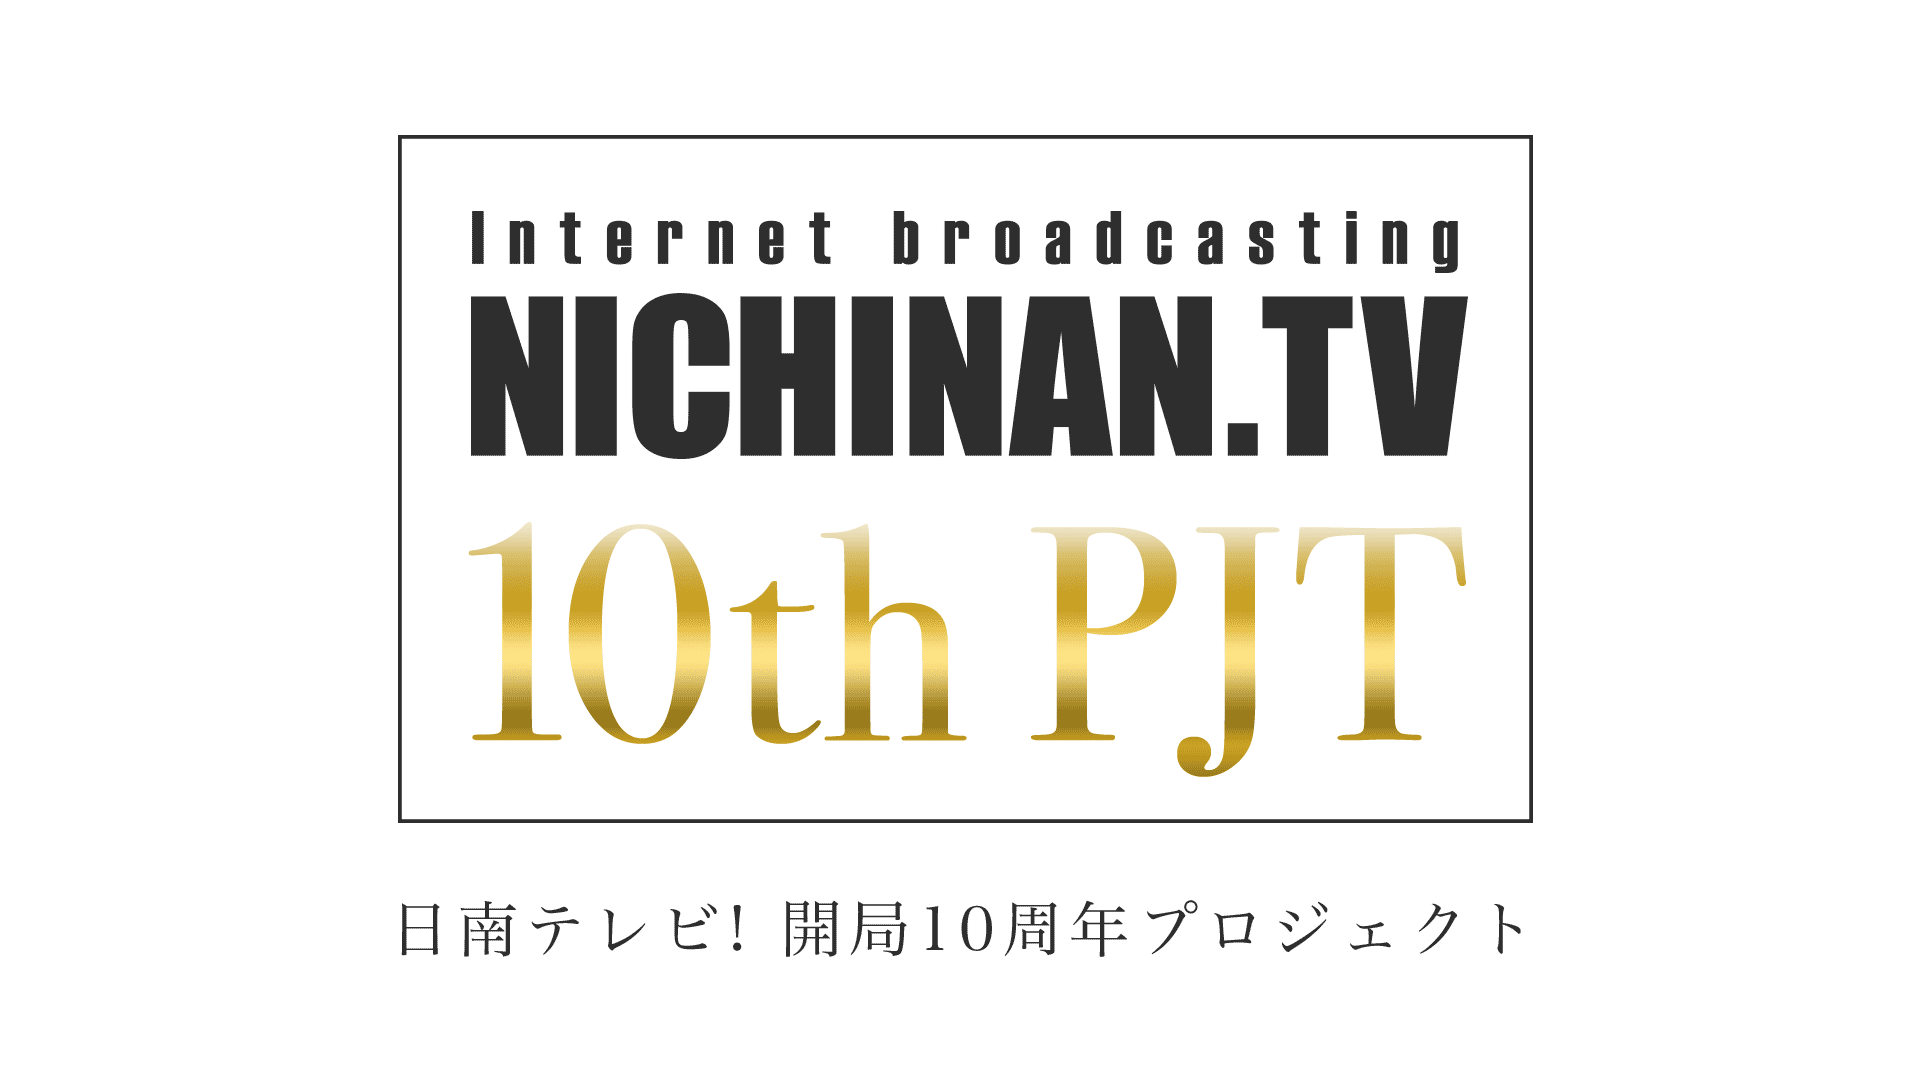 日南テレビ! 開局10周年プロジェクト